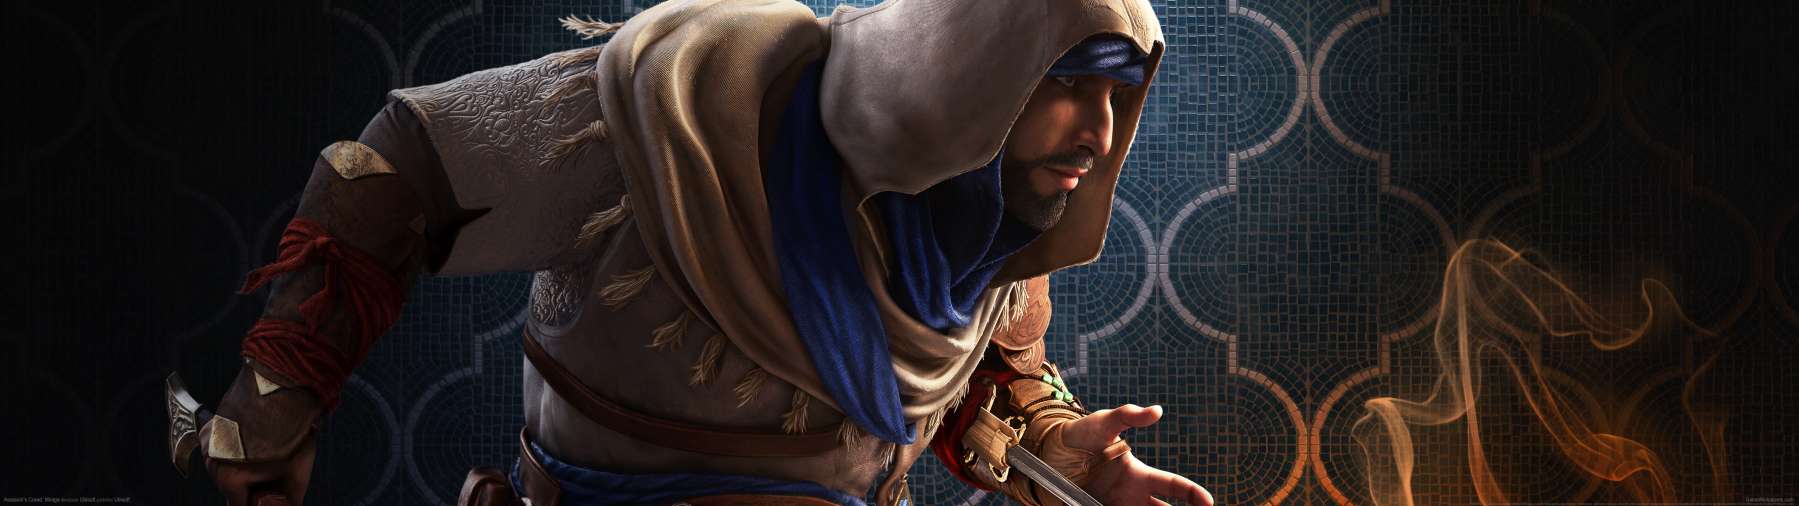 Assassin's Creed: Mirage superwide fondo de escritorio 02